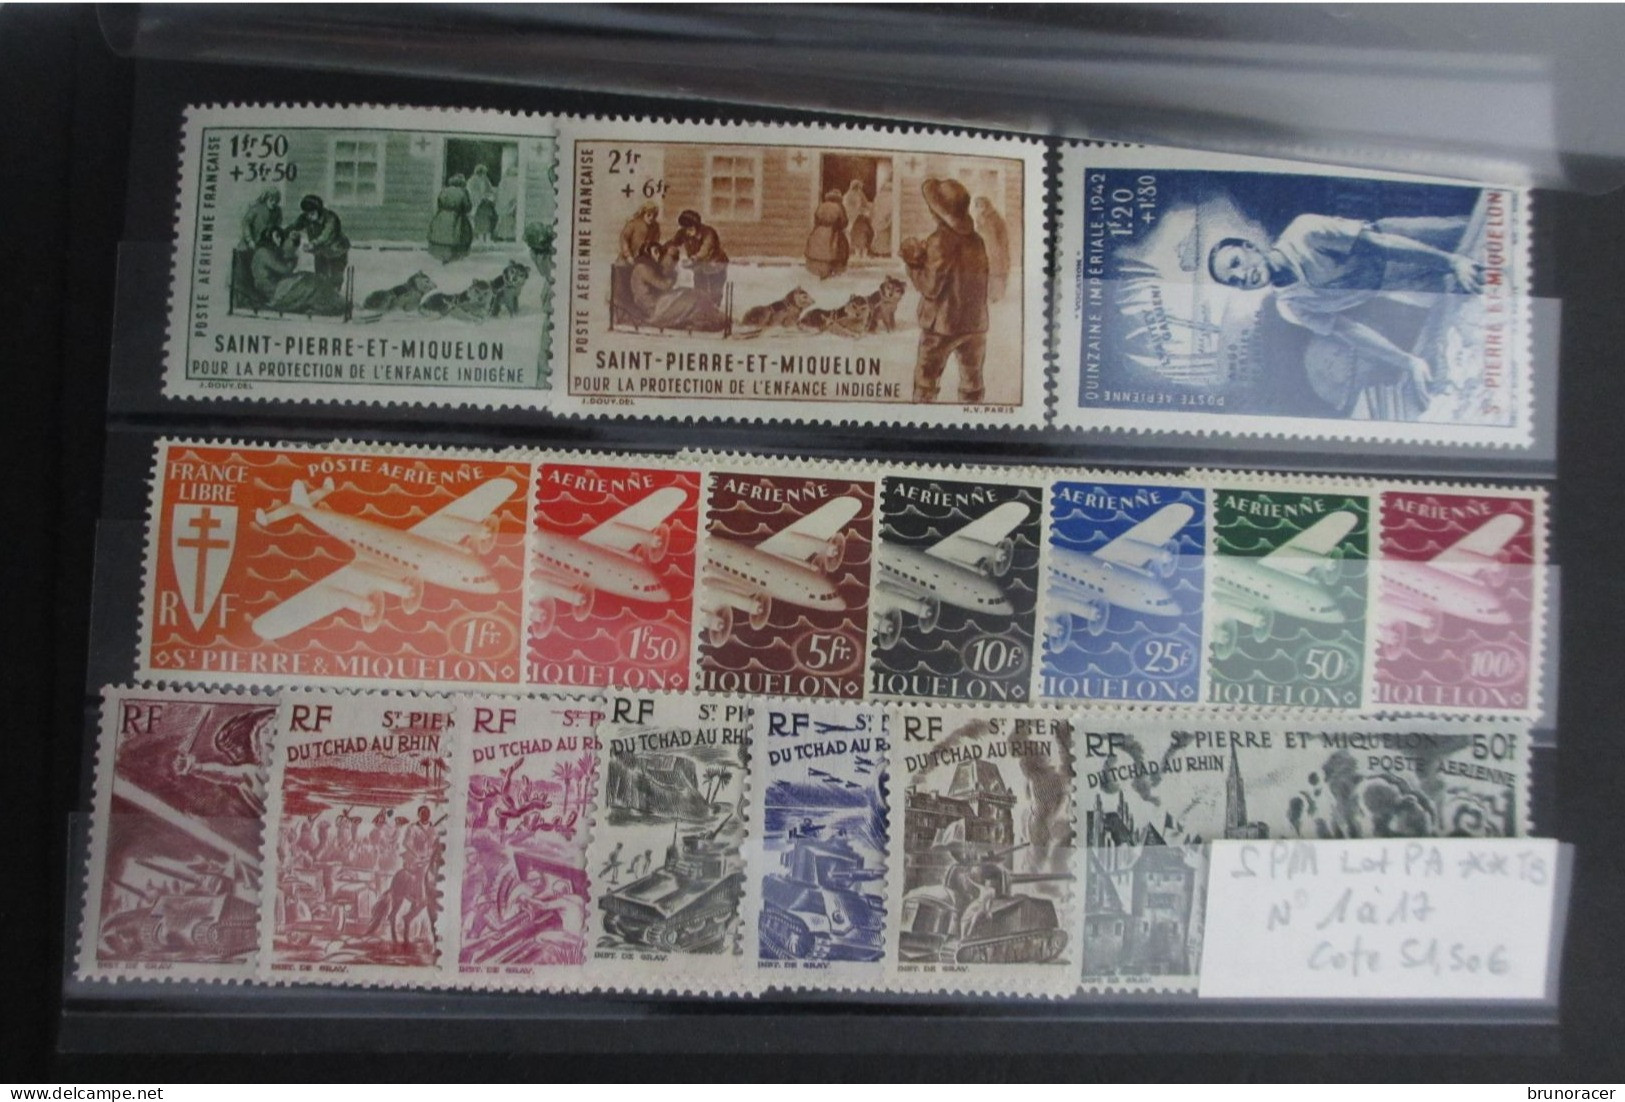 St PIERRE & MIQUELON POPSTE AERIENNE N°1 à 17 NEUF* TB COTE 51,50 EUROS VOIR SCANS - Unused Stamps